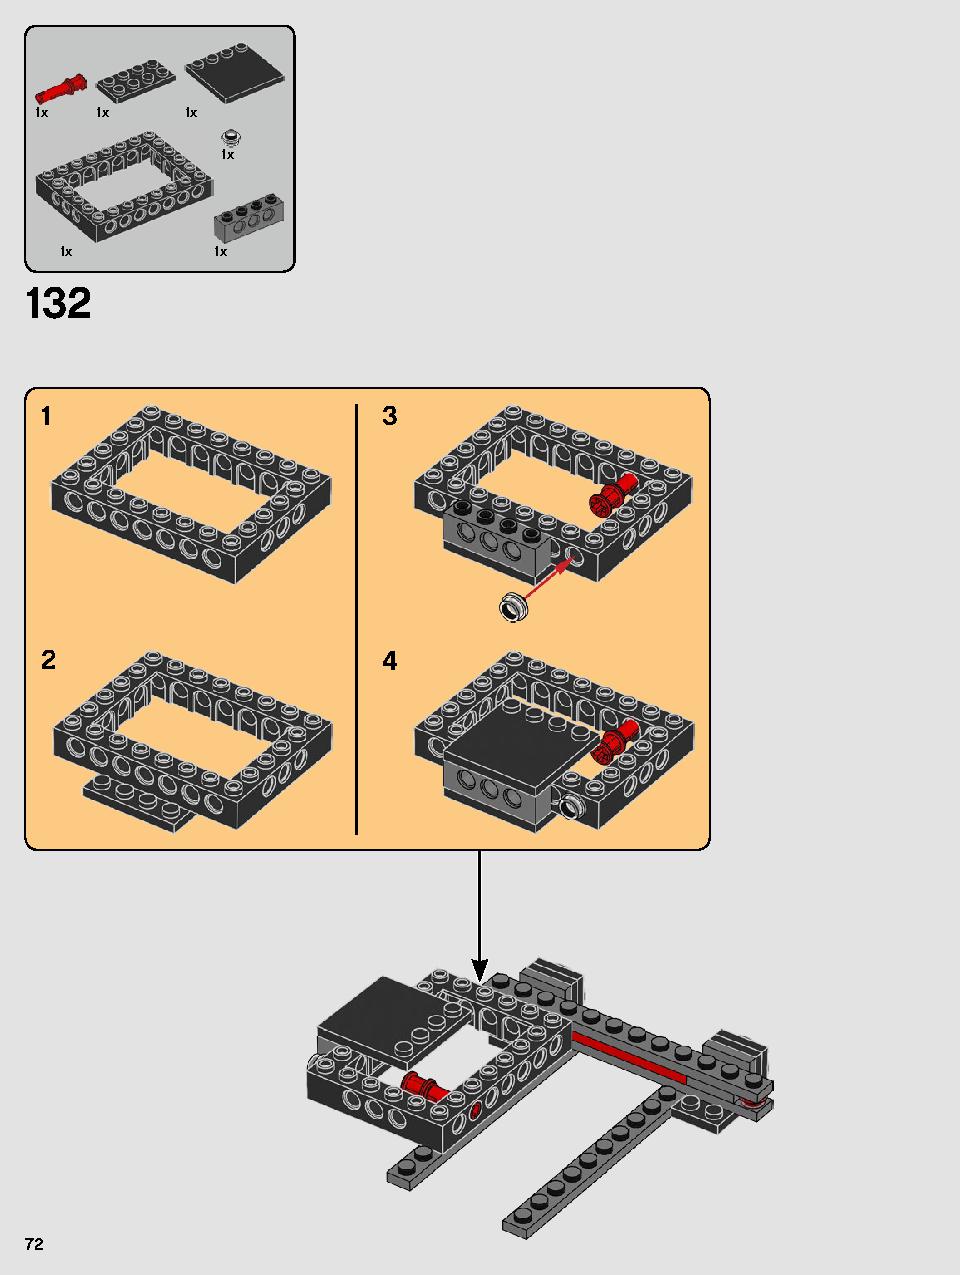 스타워즈 카일로 렌의 셔틀™ 75256 레고 세트 제품정보 레고 조립설명서 72 page